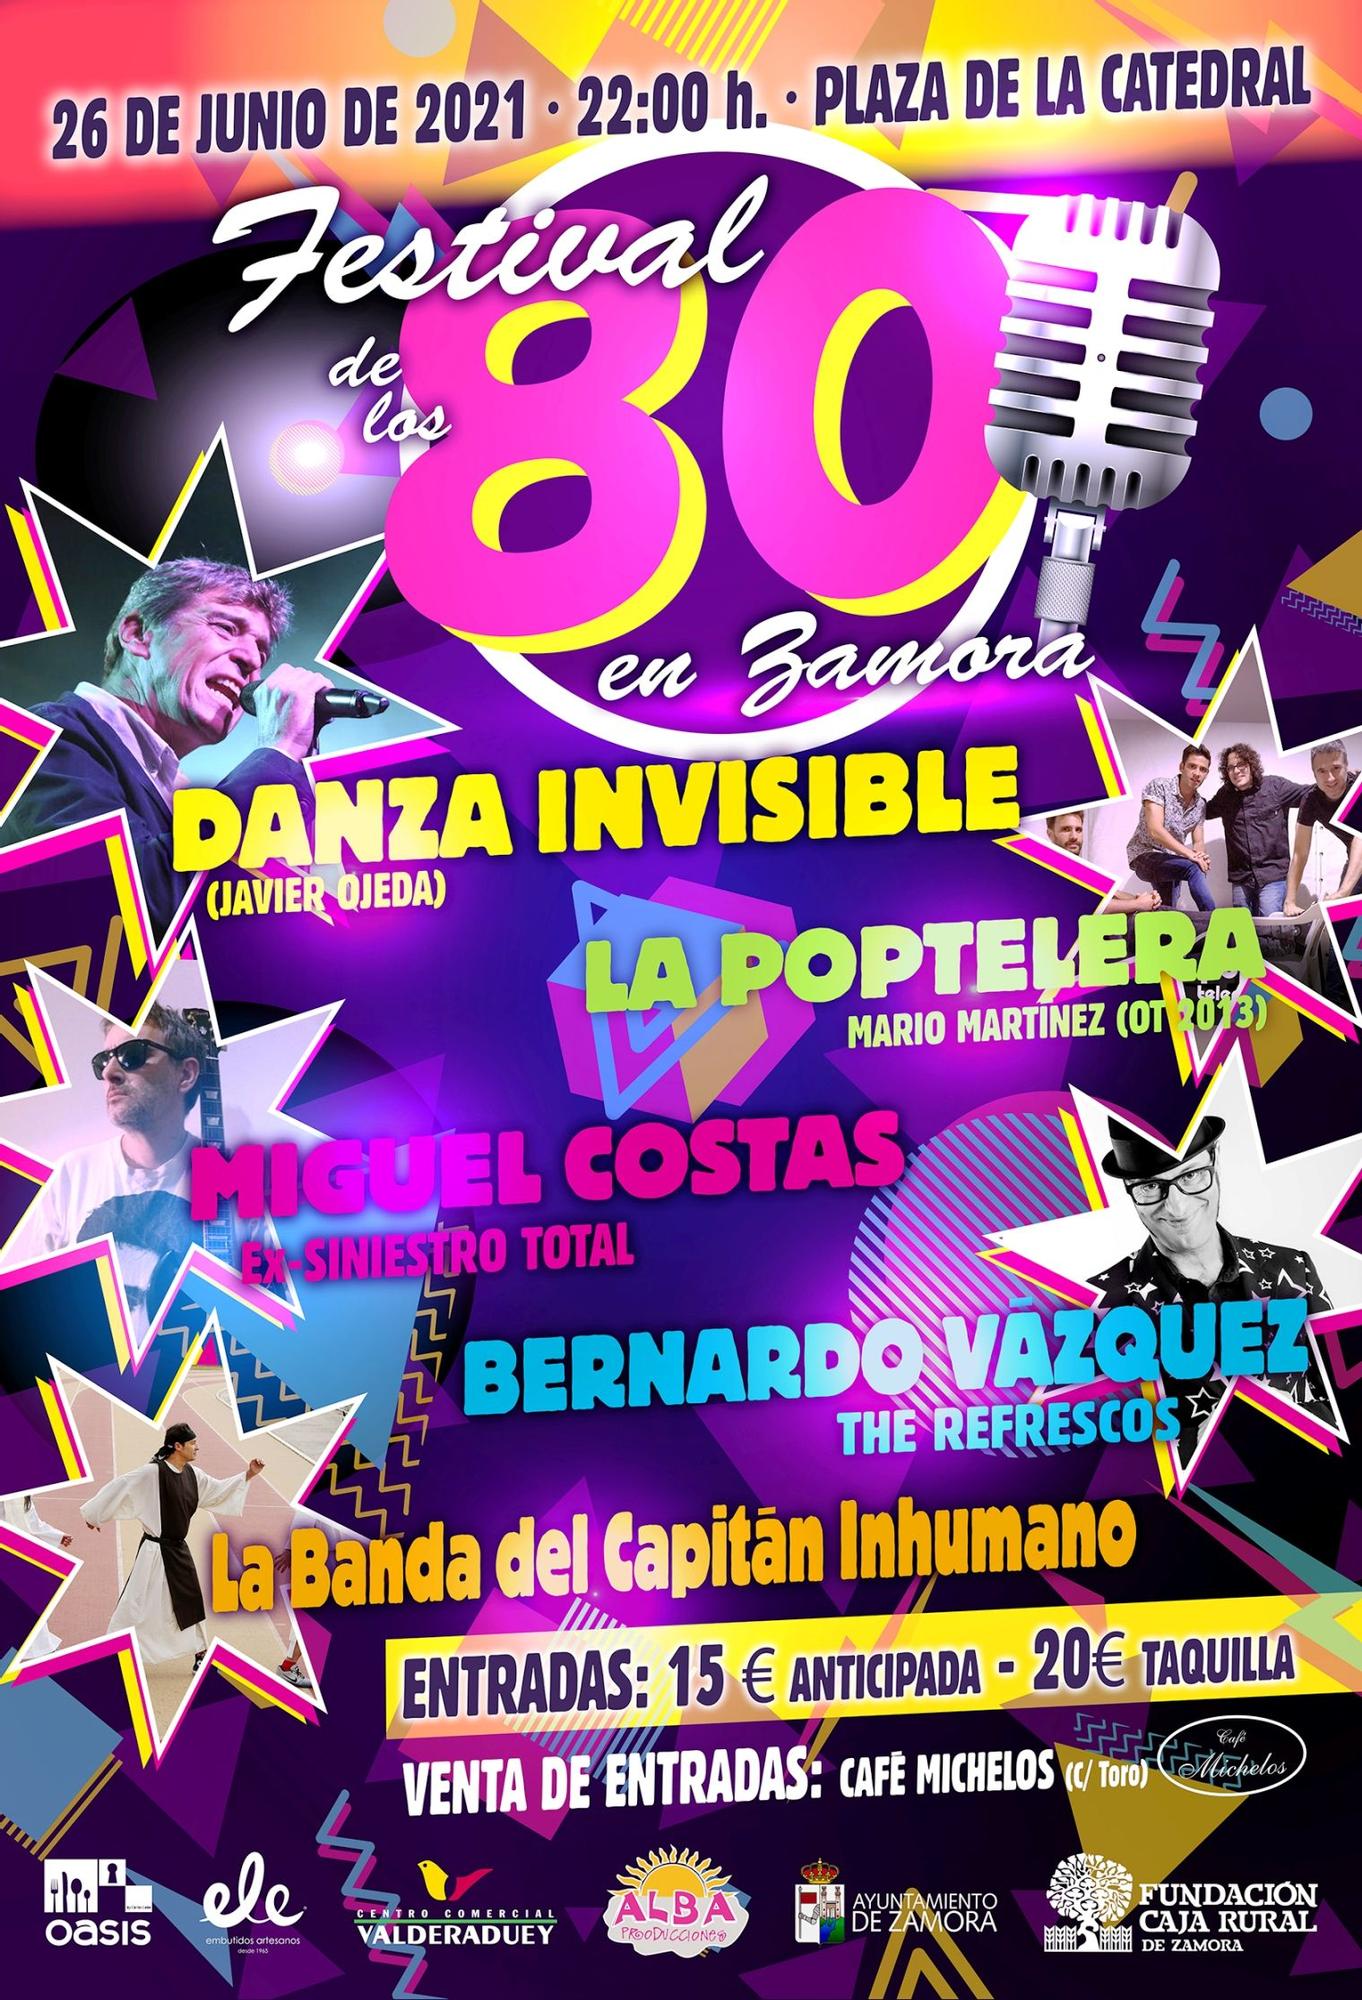 Cartel promocional del festival de los 80 en Zamora.